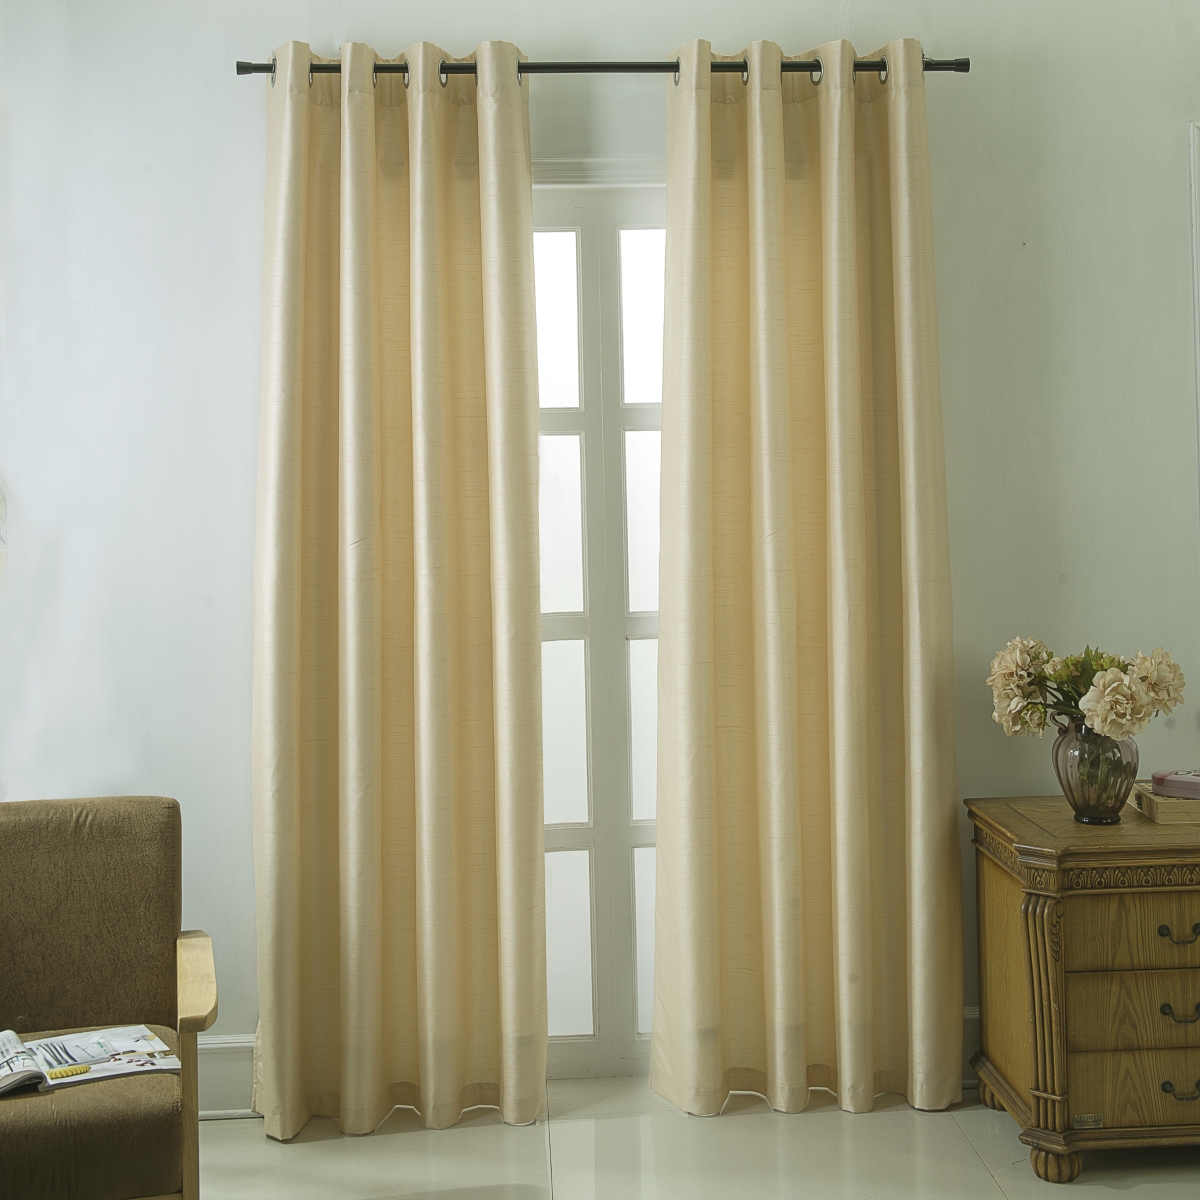 Pns18505 Shelton Faux Silk Room Darkening Grommet Single Curtain Panel In Beige - 54 X 84 In.